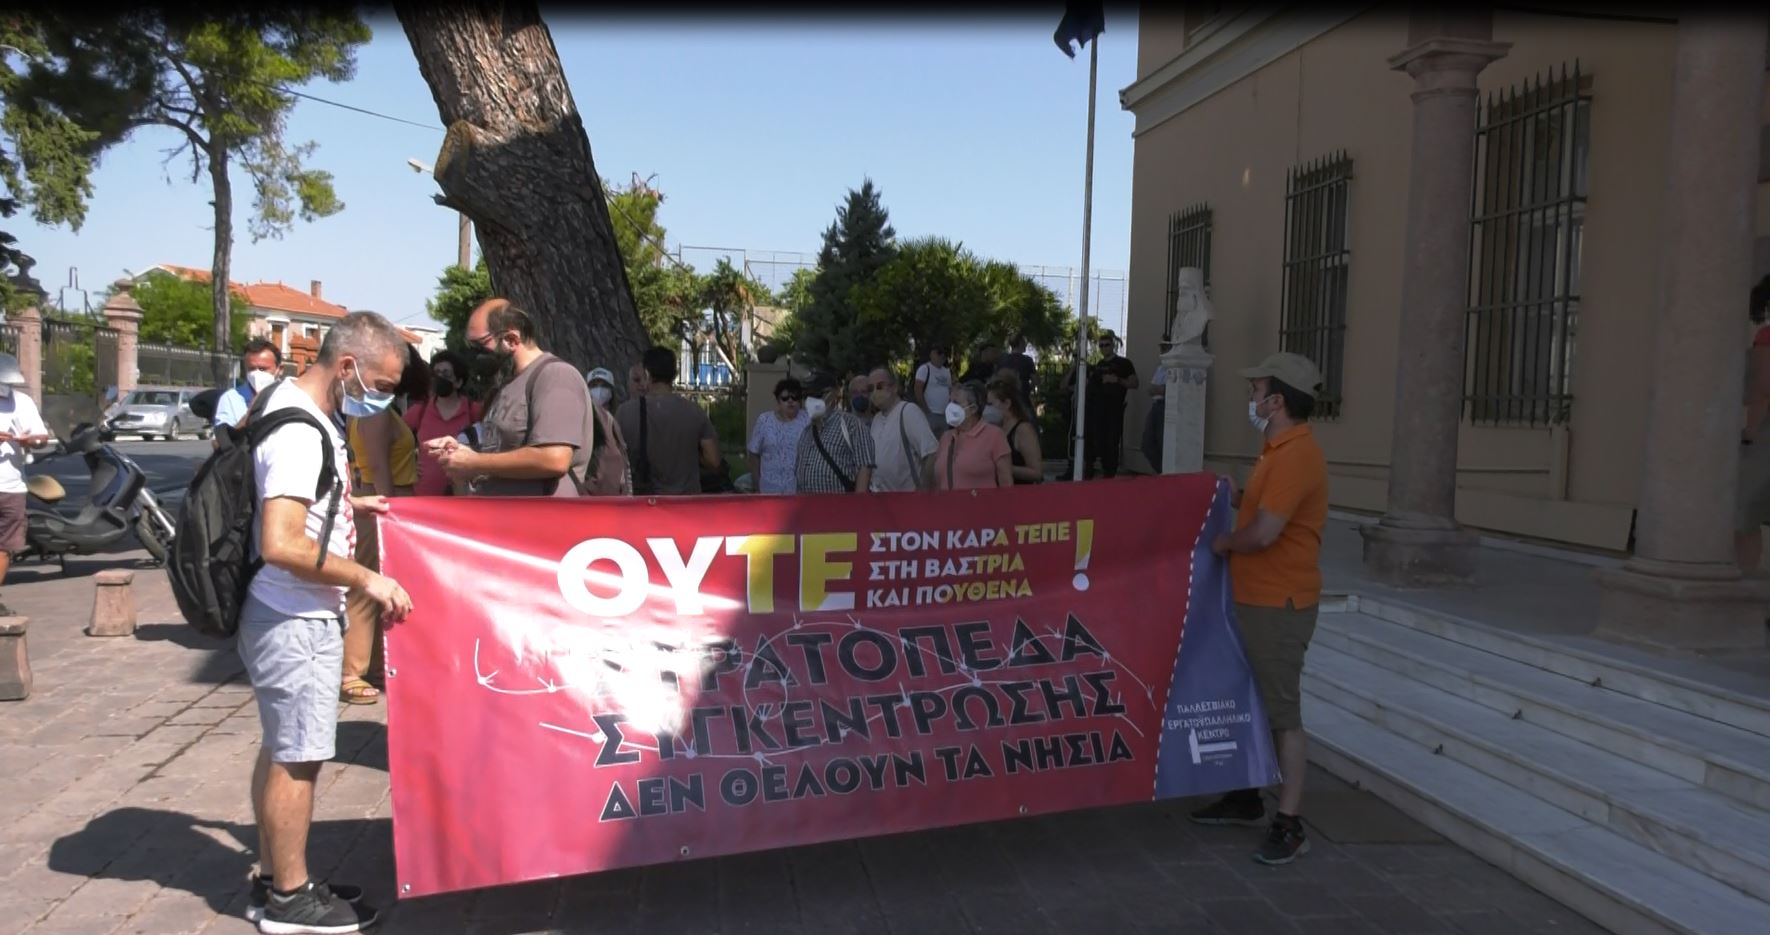 Μυτιλήνη: Παράσταση διαμαρτυρίας για τη Βάστρια